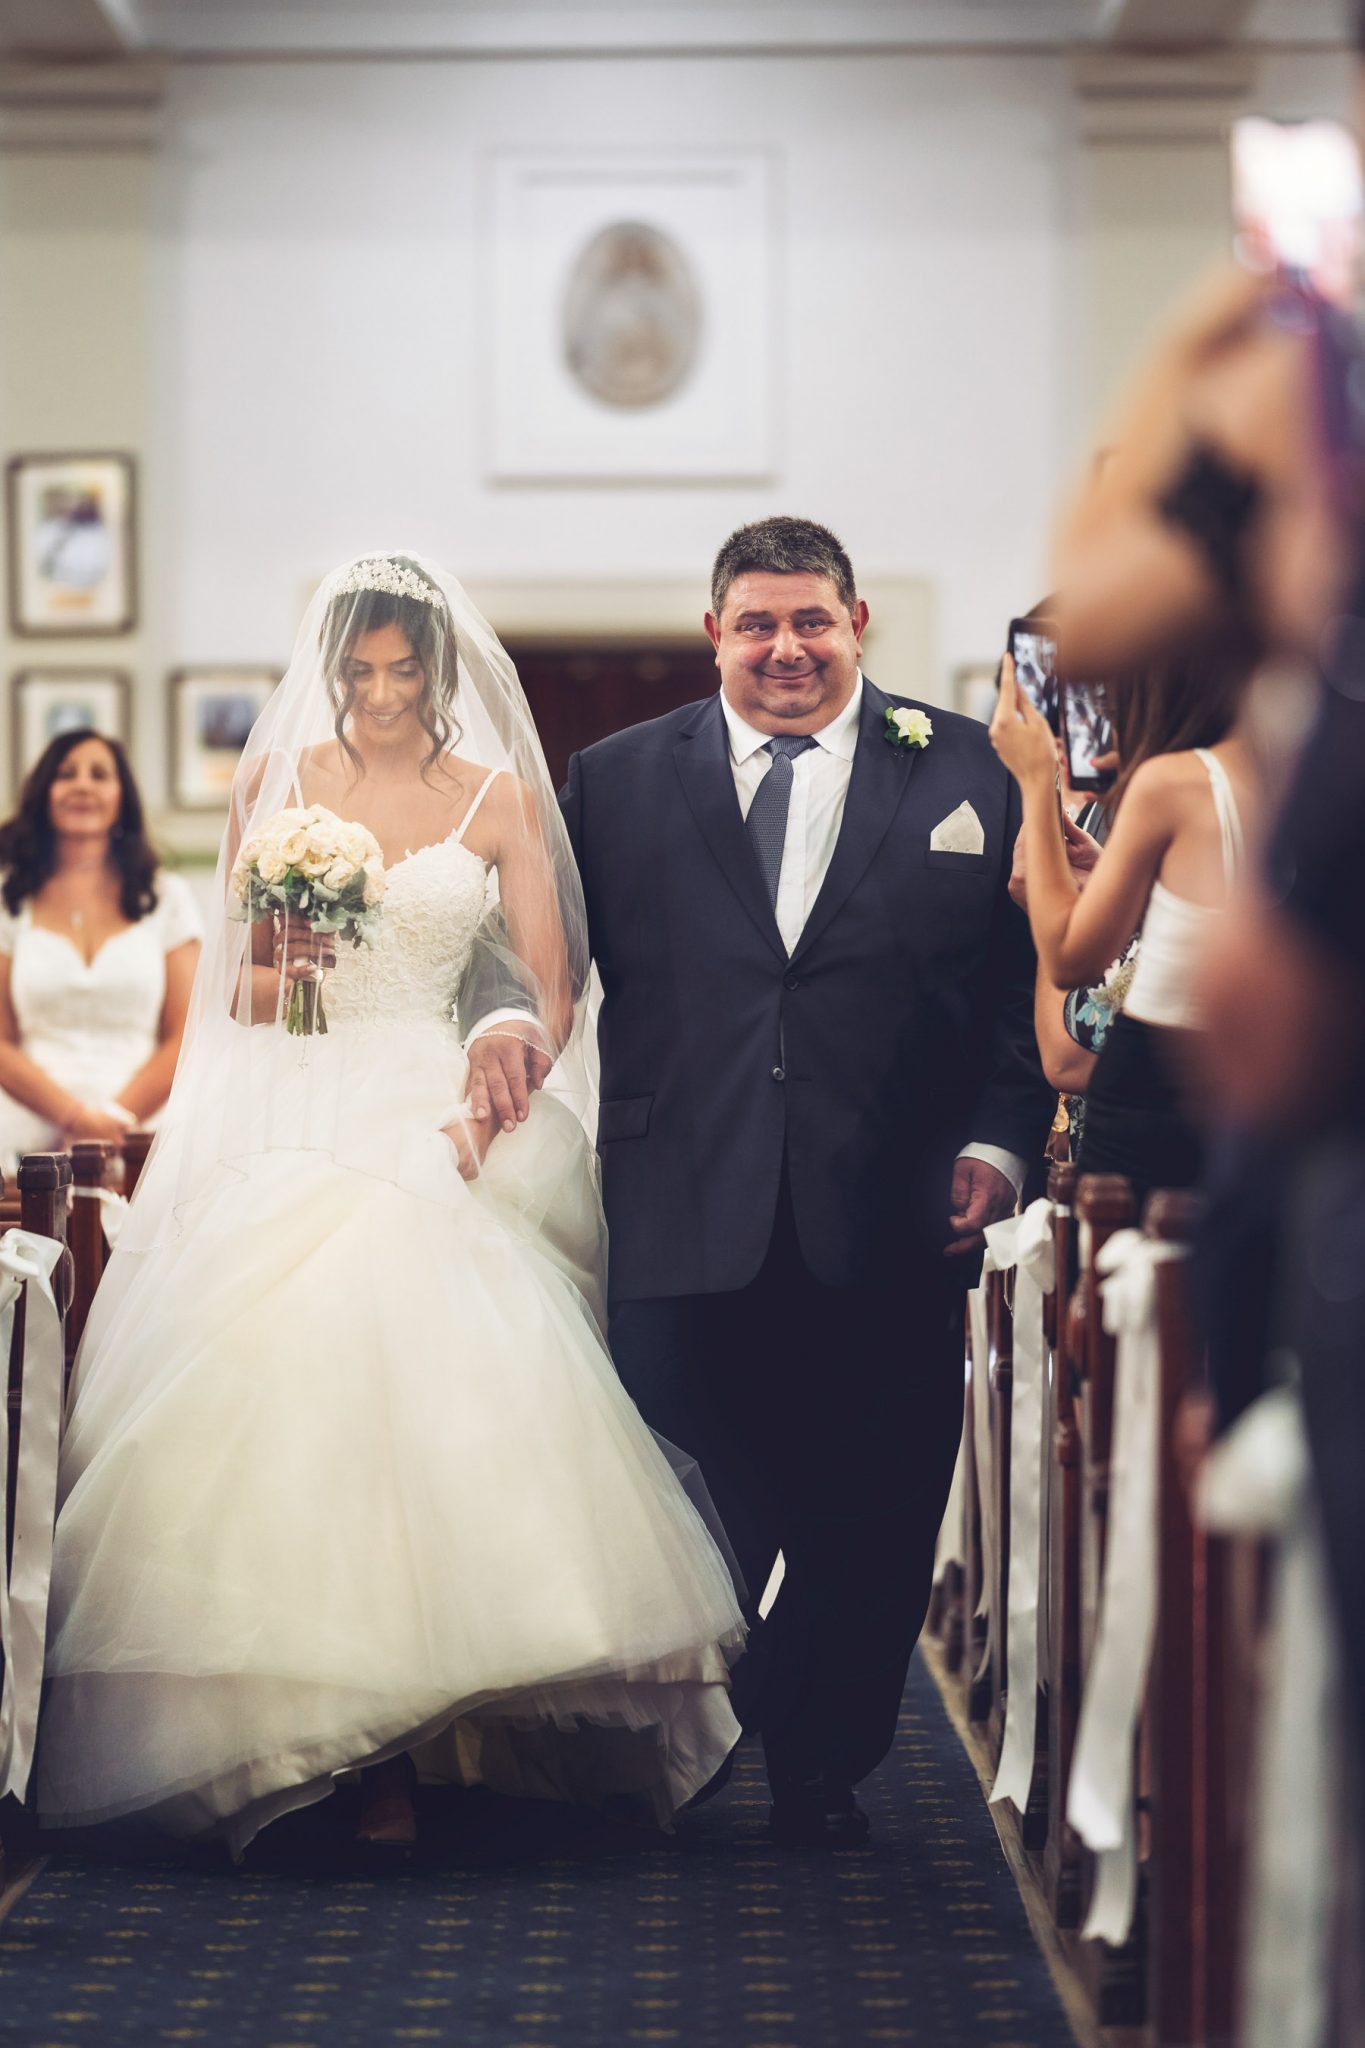 A Modern Yet Traditional Italian Wedding - Wedded Wonderland